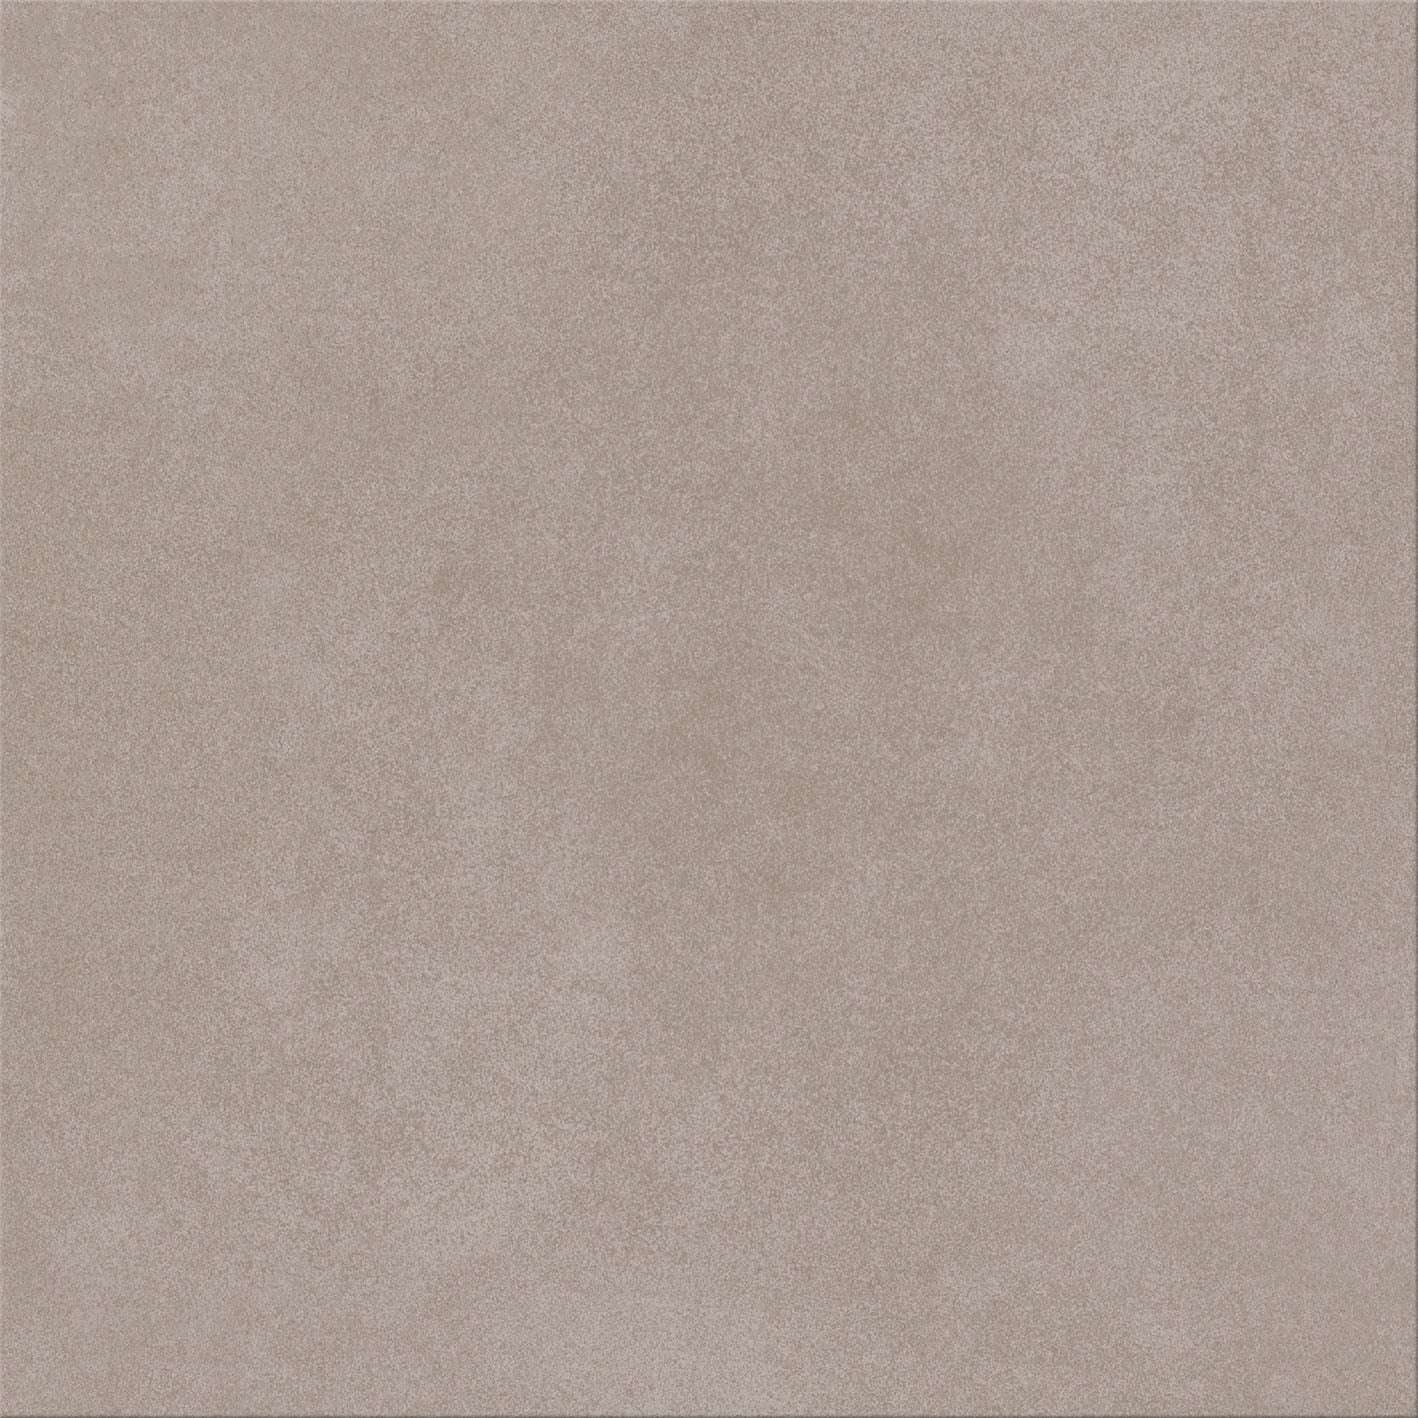 Керамогранит Cinca Bel Air Taupe 8569, цвет коричневый, поверхность глазурованная, квадрат, 330x330